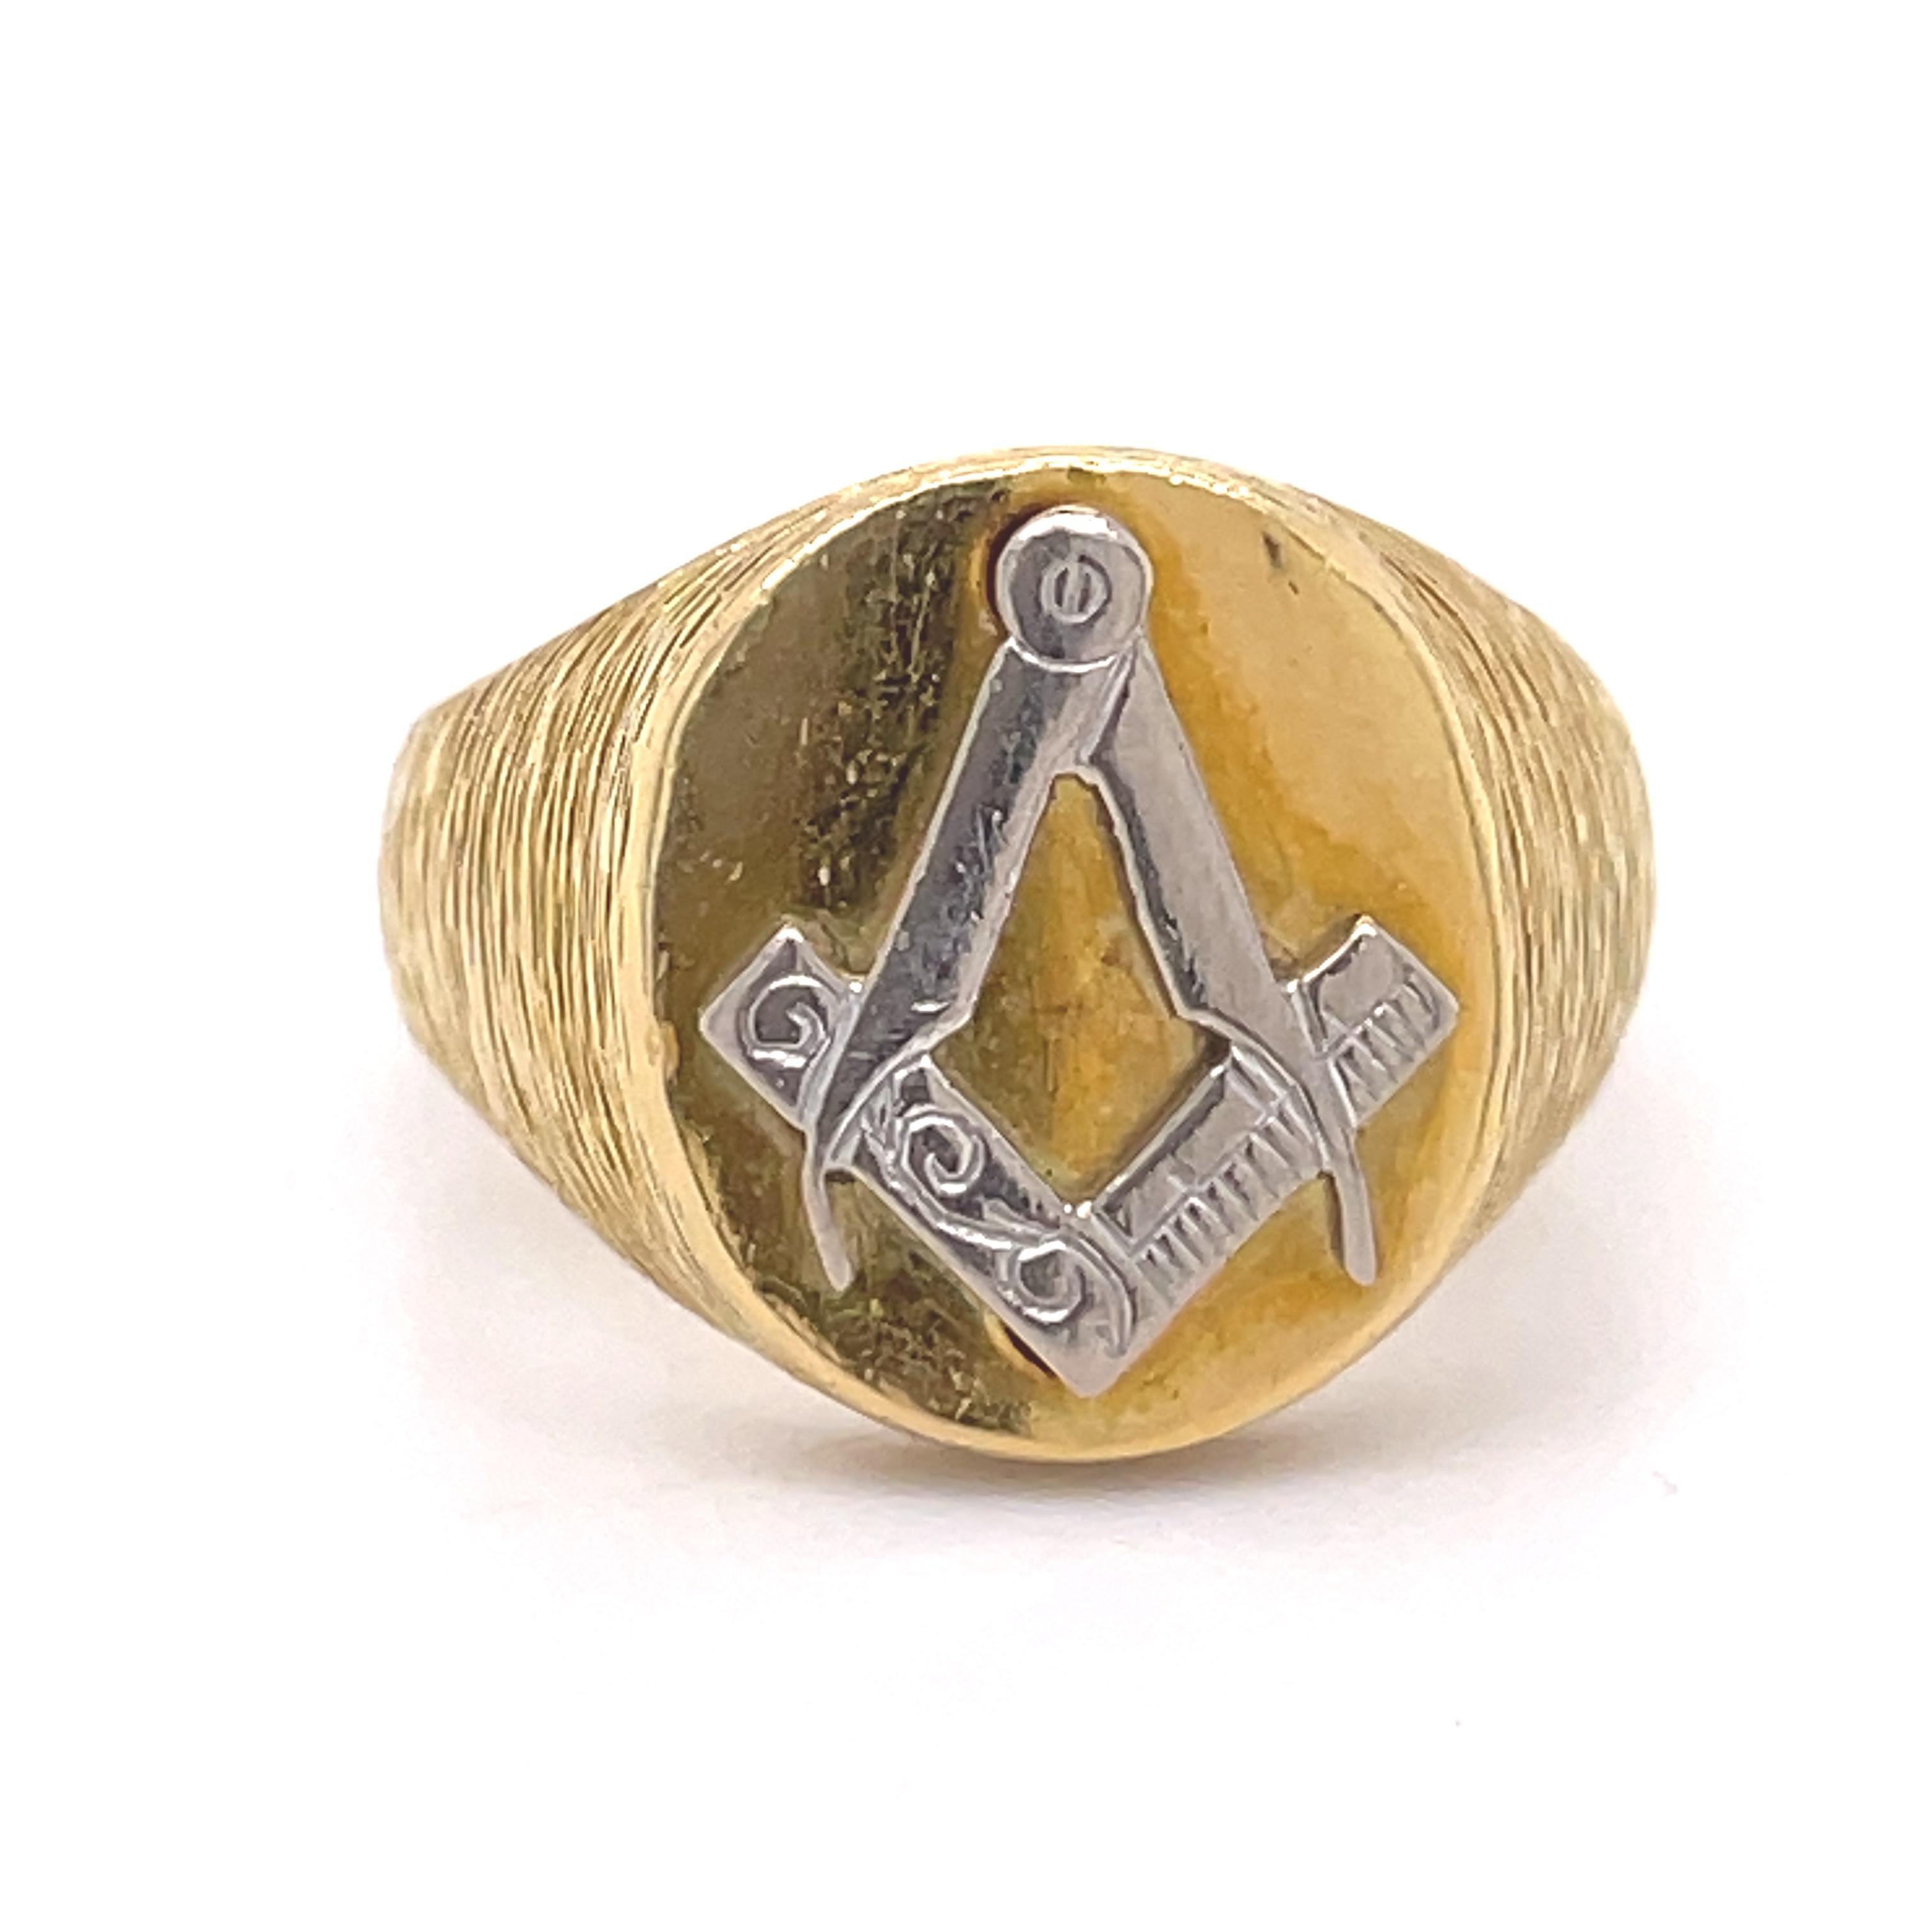 Free Masons Pinky ring - Kutchinsky jewelry, 18K yellow gold, freemasons symbol For Sale 4